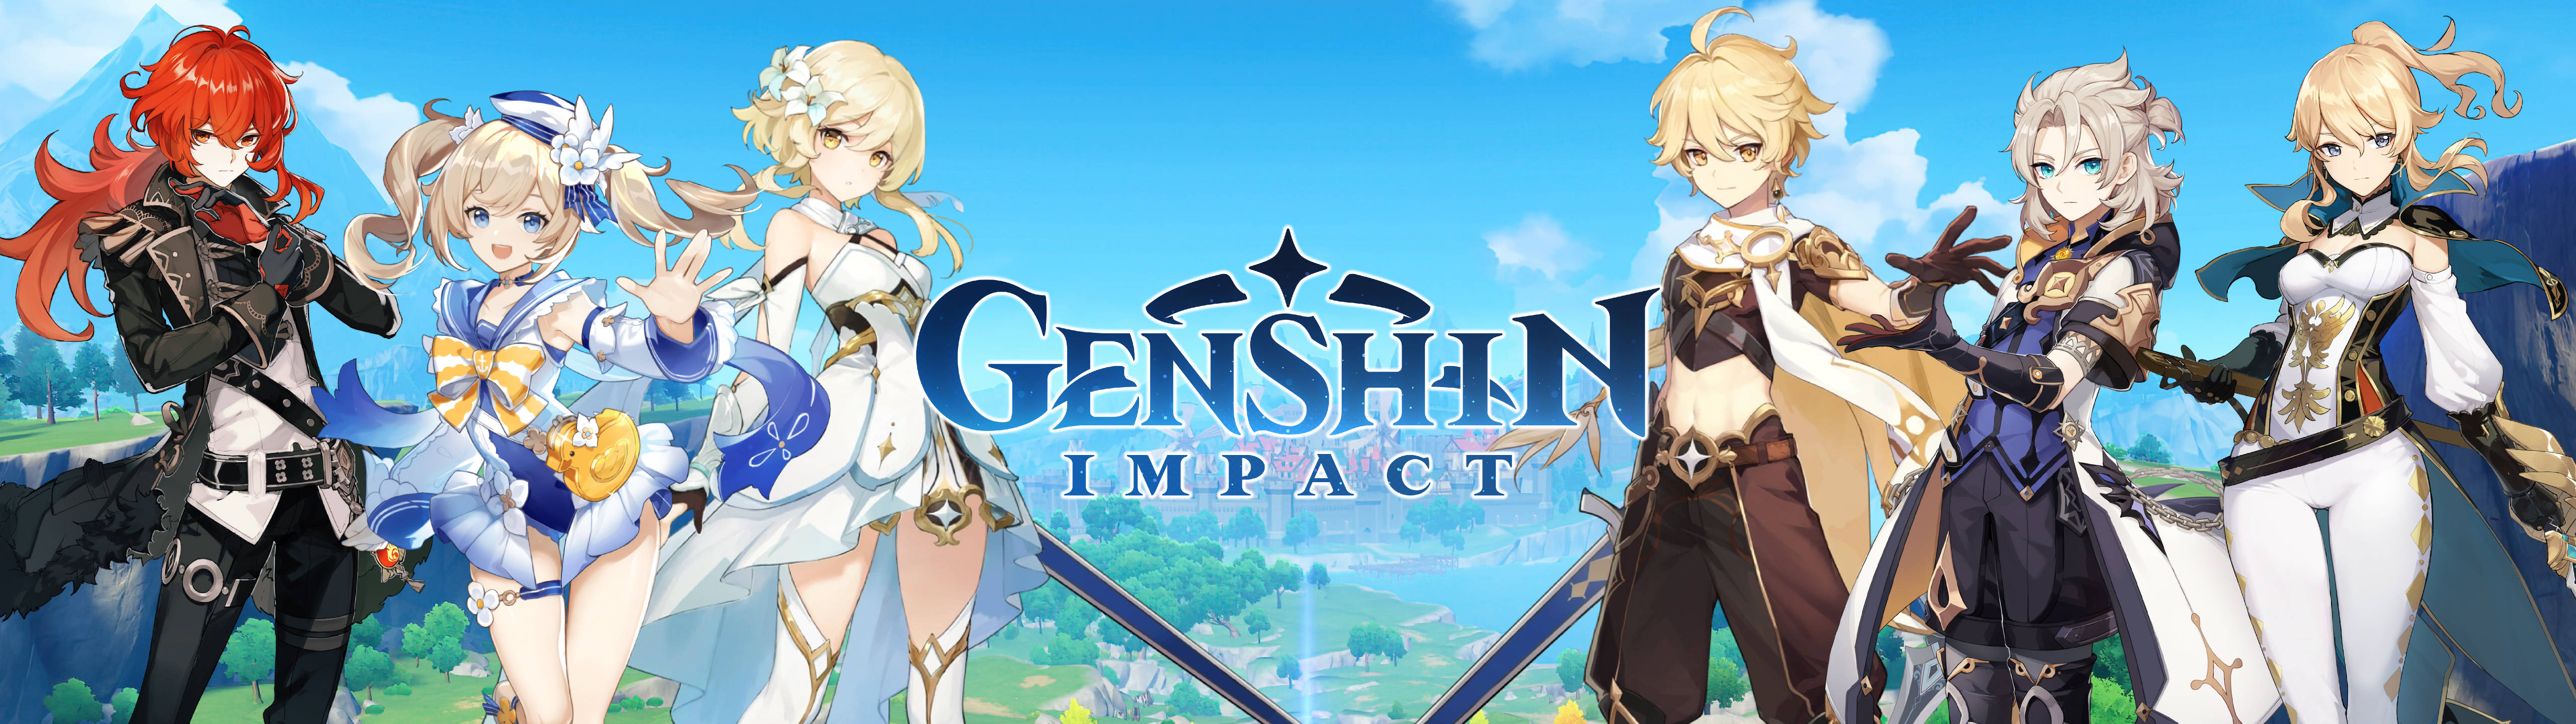 Genshin Impact Mondstadt 5120x1440 Gaming Wallpaper